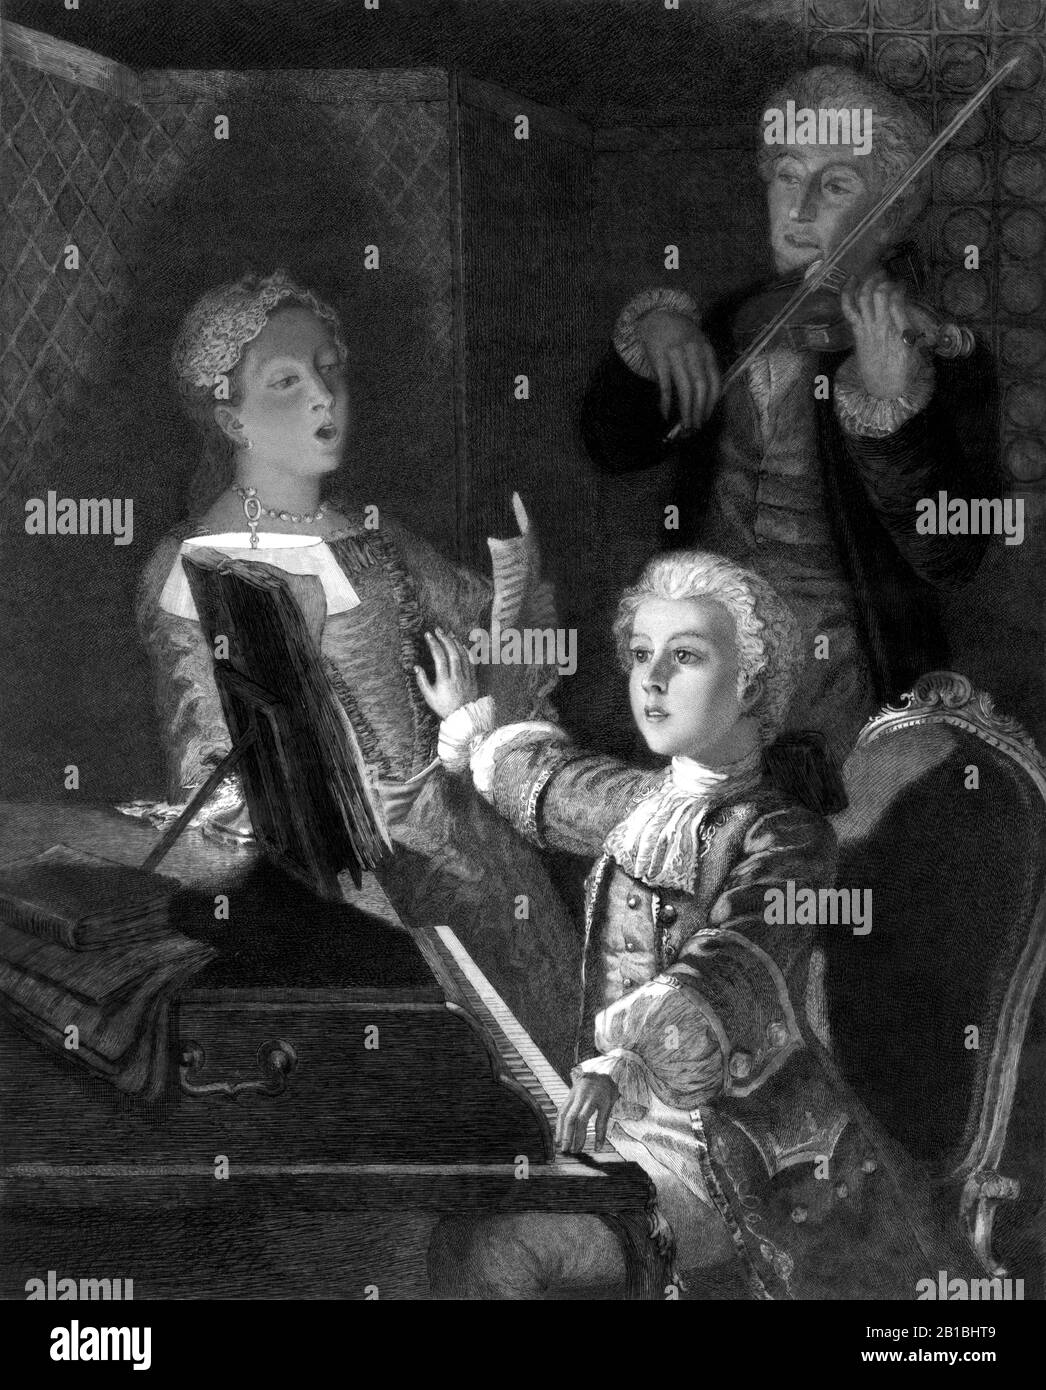 Vintage-Druck, der den Komponisten Wolfgang Amadeus Mozart (1750-12) als Kind darstellt, der seine XI. Masse probt. Radierung durch V Focillon aus einem Gemälde von J Scherrer, herausgegeben um 1897 von C Klackner aus New York. Stockfoto